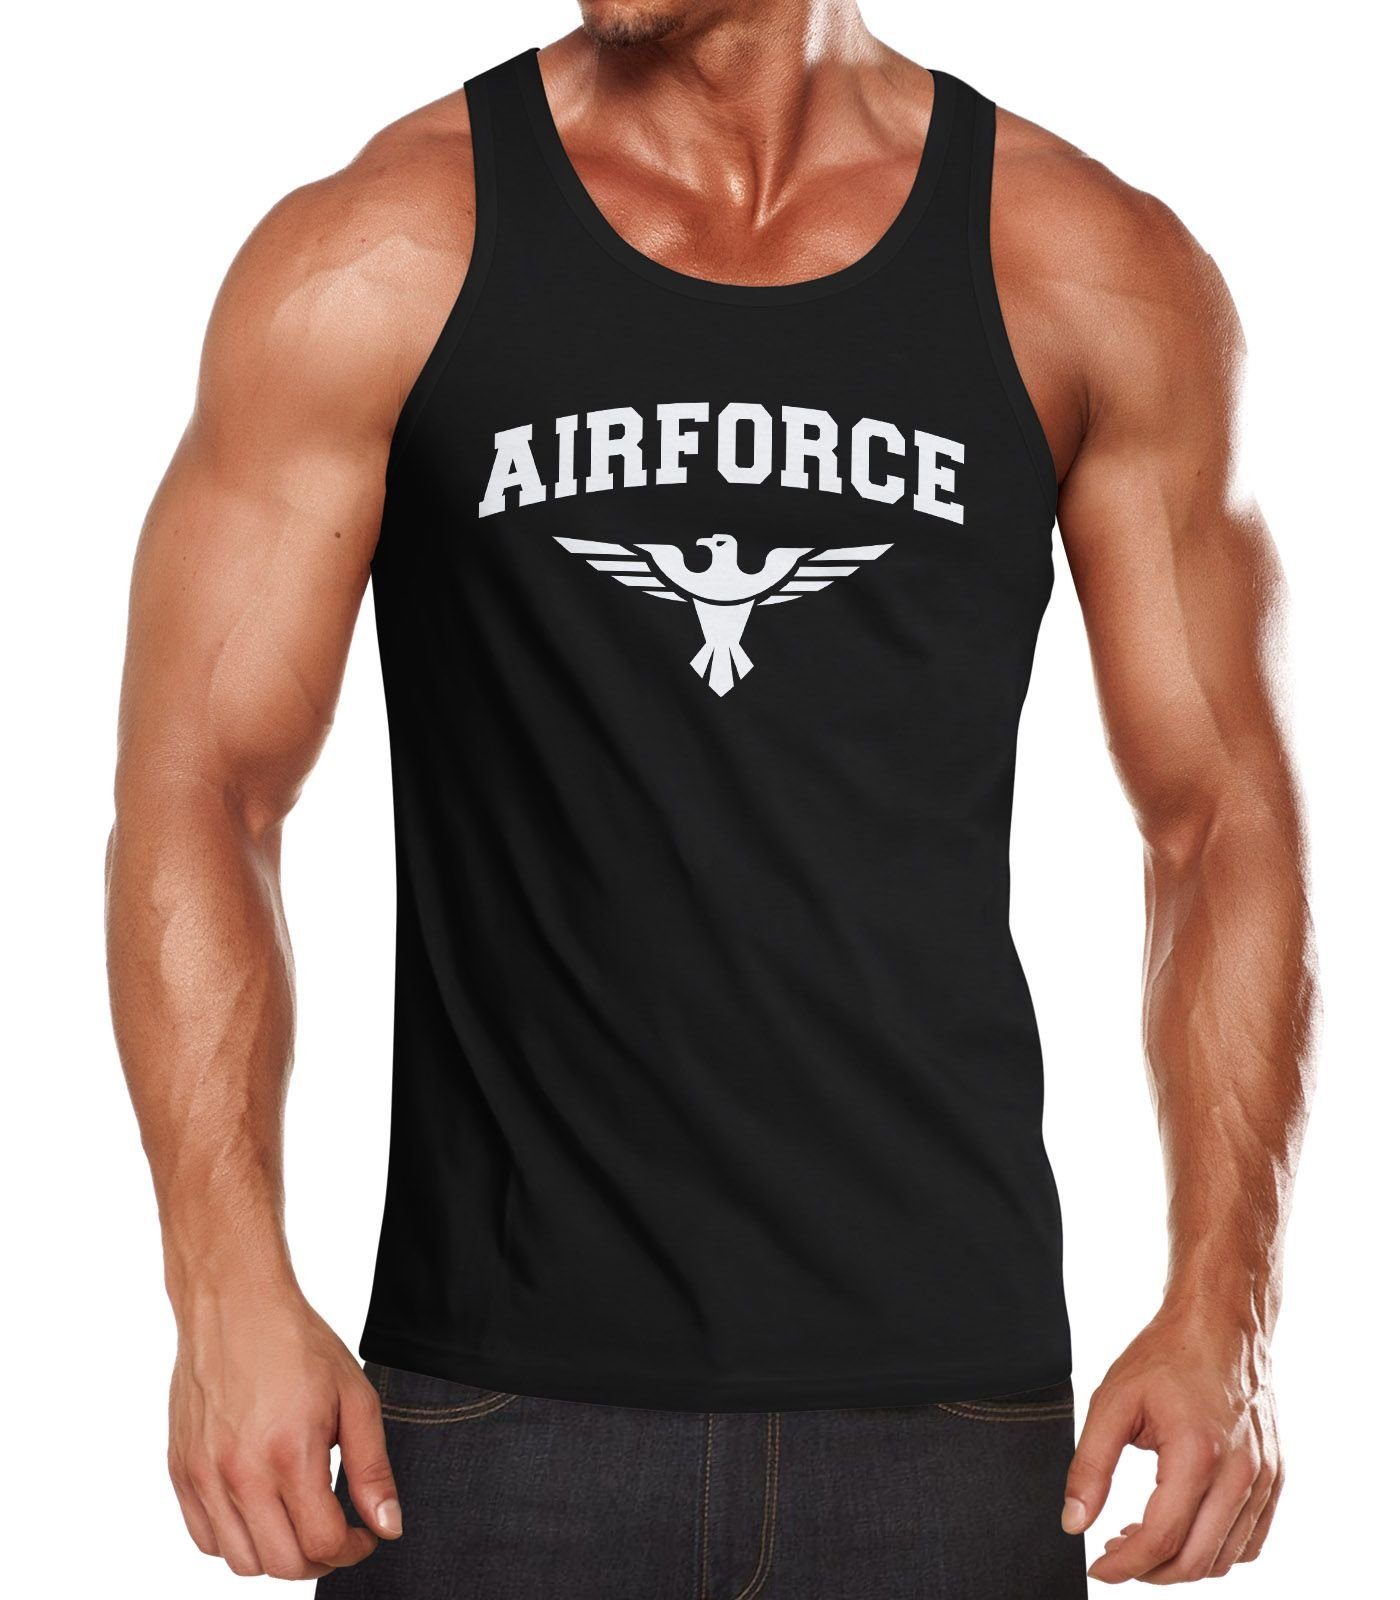 Neverless Tanktop Herren Tank-Top Airforce US Army Adler Militär Muskelshirt Muscle Shirt Neverless® mit Print